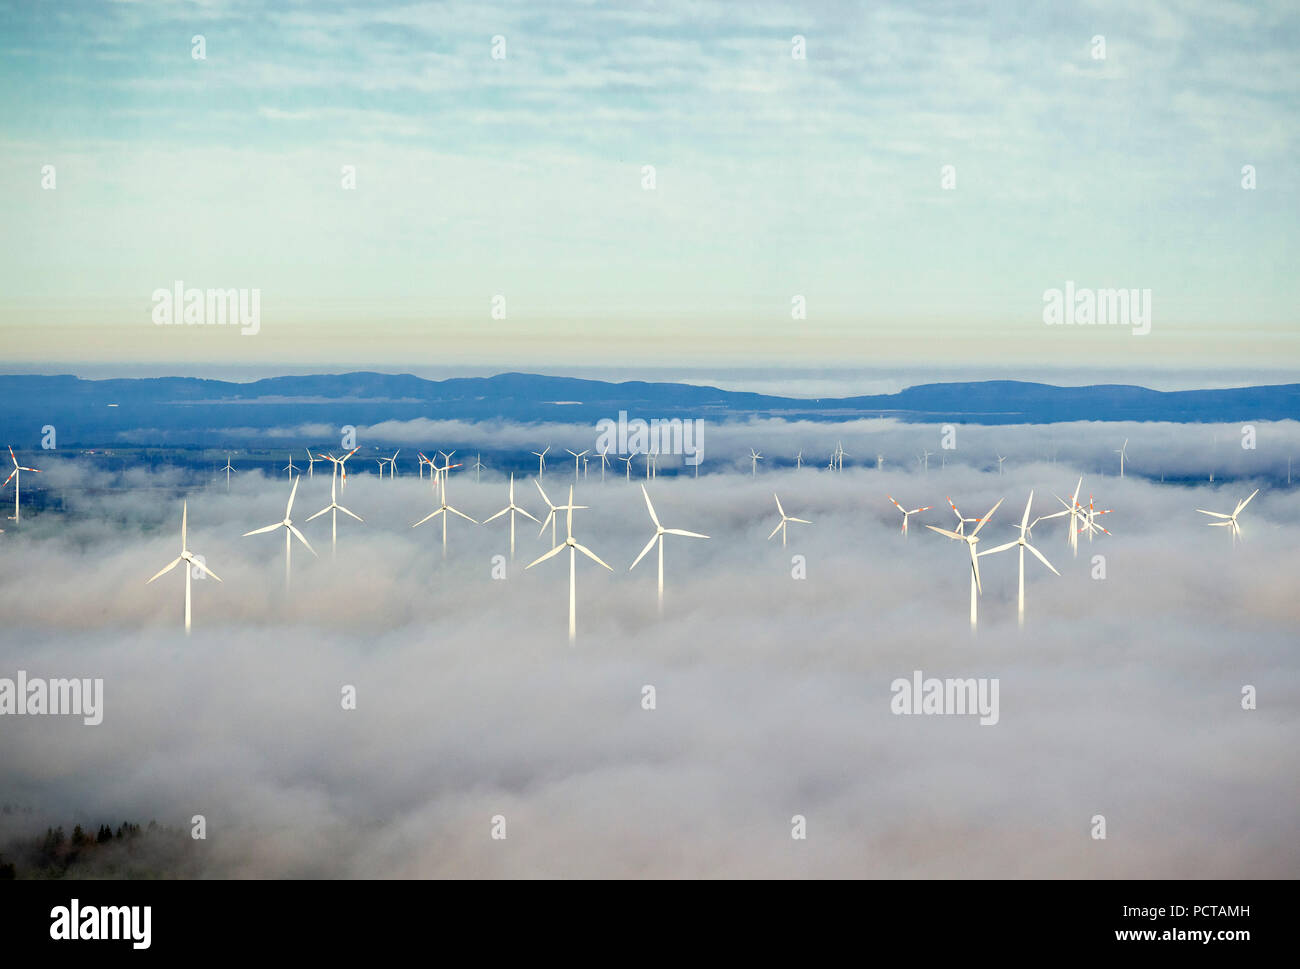 Le turbine eoliche in una copertura di nuvole, cielo blu, vista aerea di Marsberg, Sauerland Foto Stock